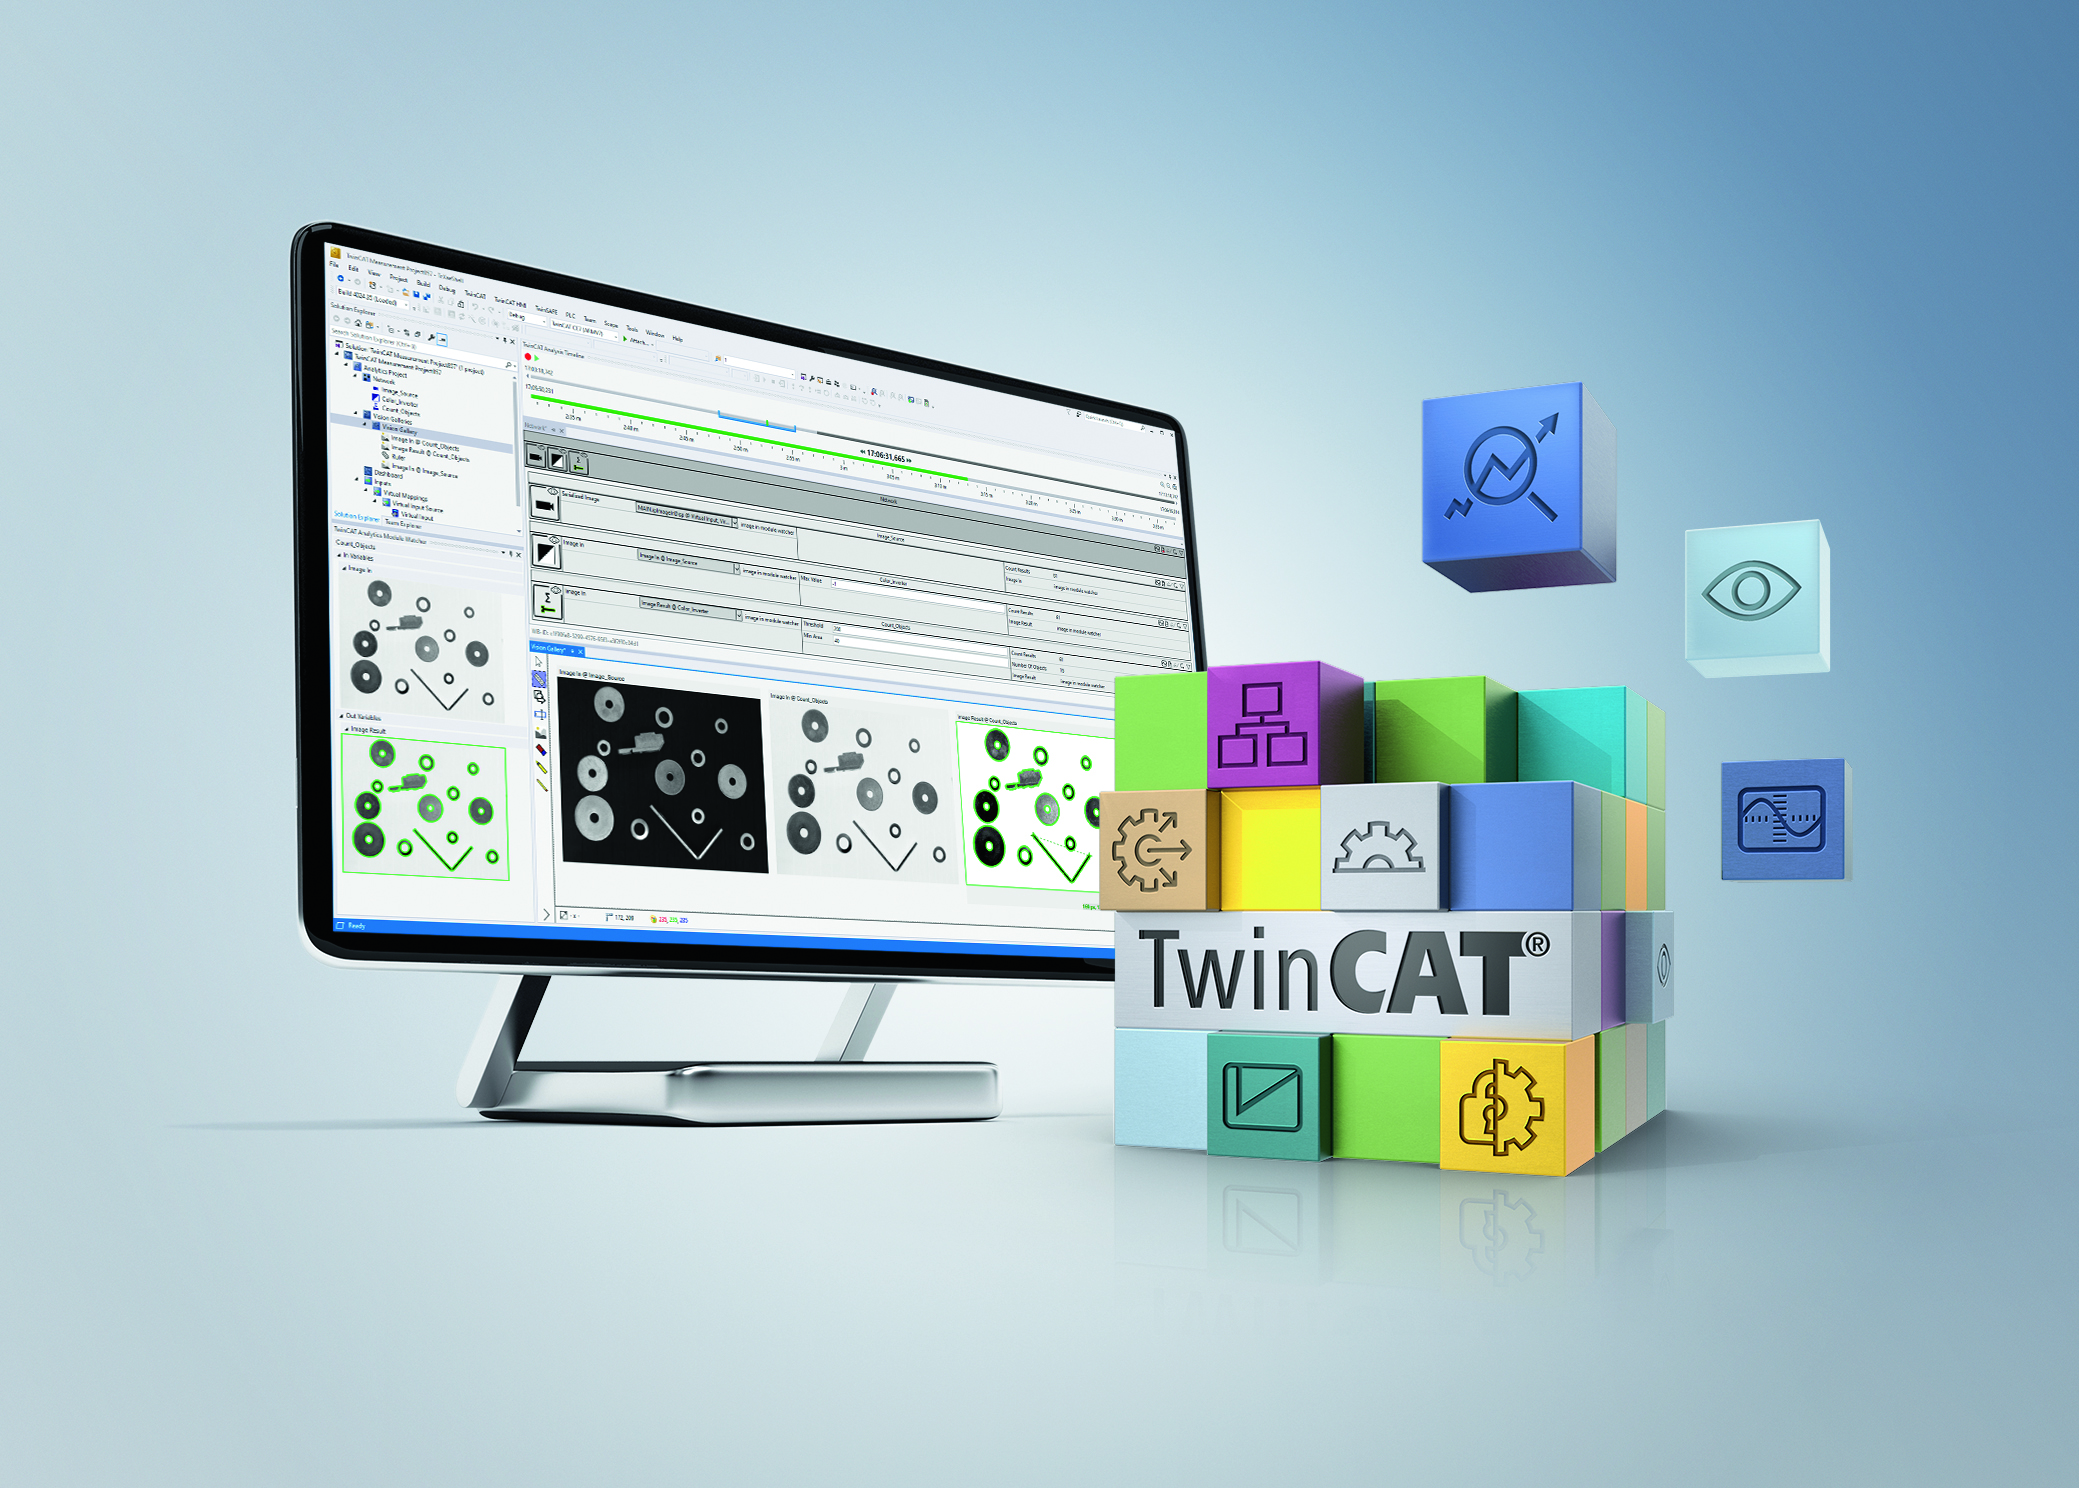 Twincat-Vision-Bibliothek
Automatische Vision-SPS-Code-Generierung